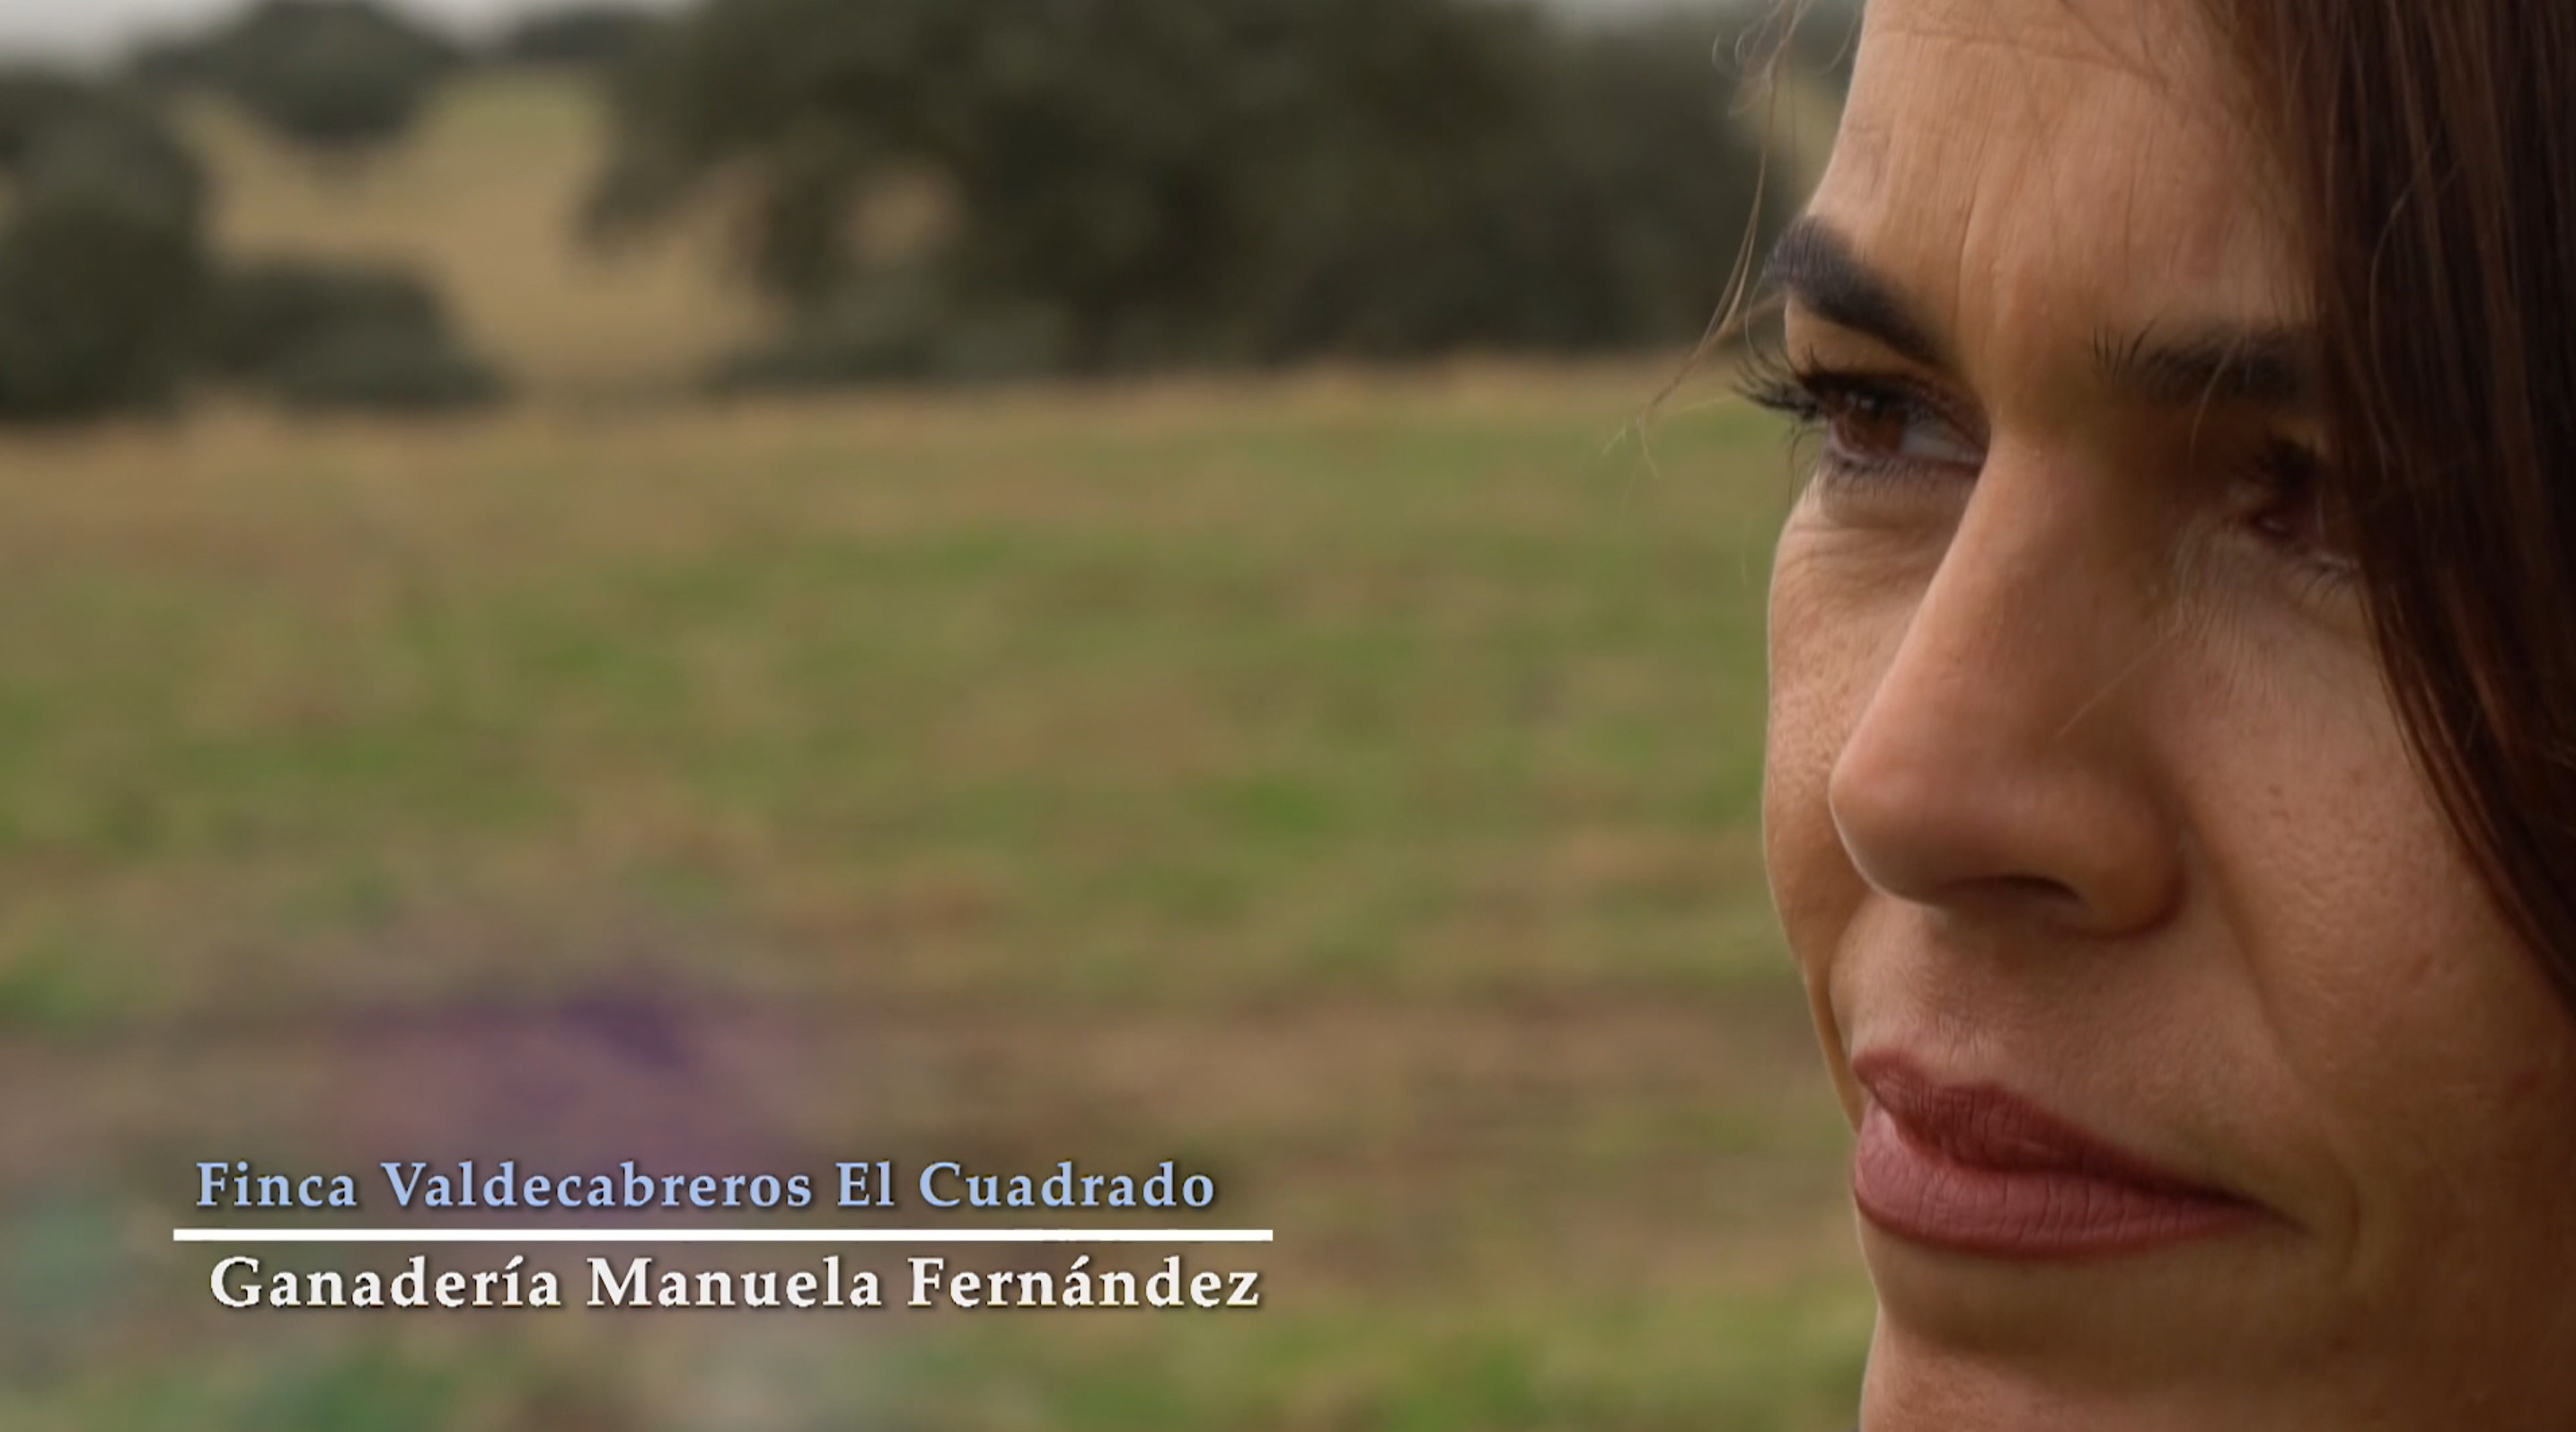 La Ganadería de Manuela Fernández, es el ejemplo del amor por el campo, el ganado y el toro.